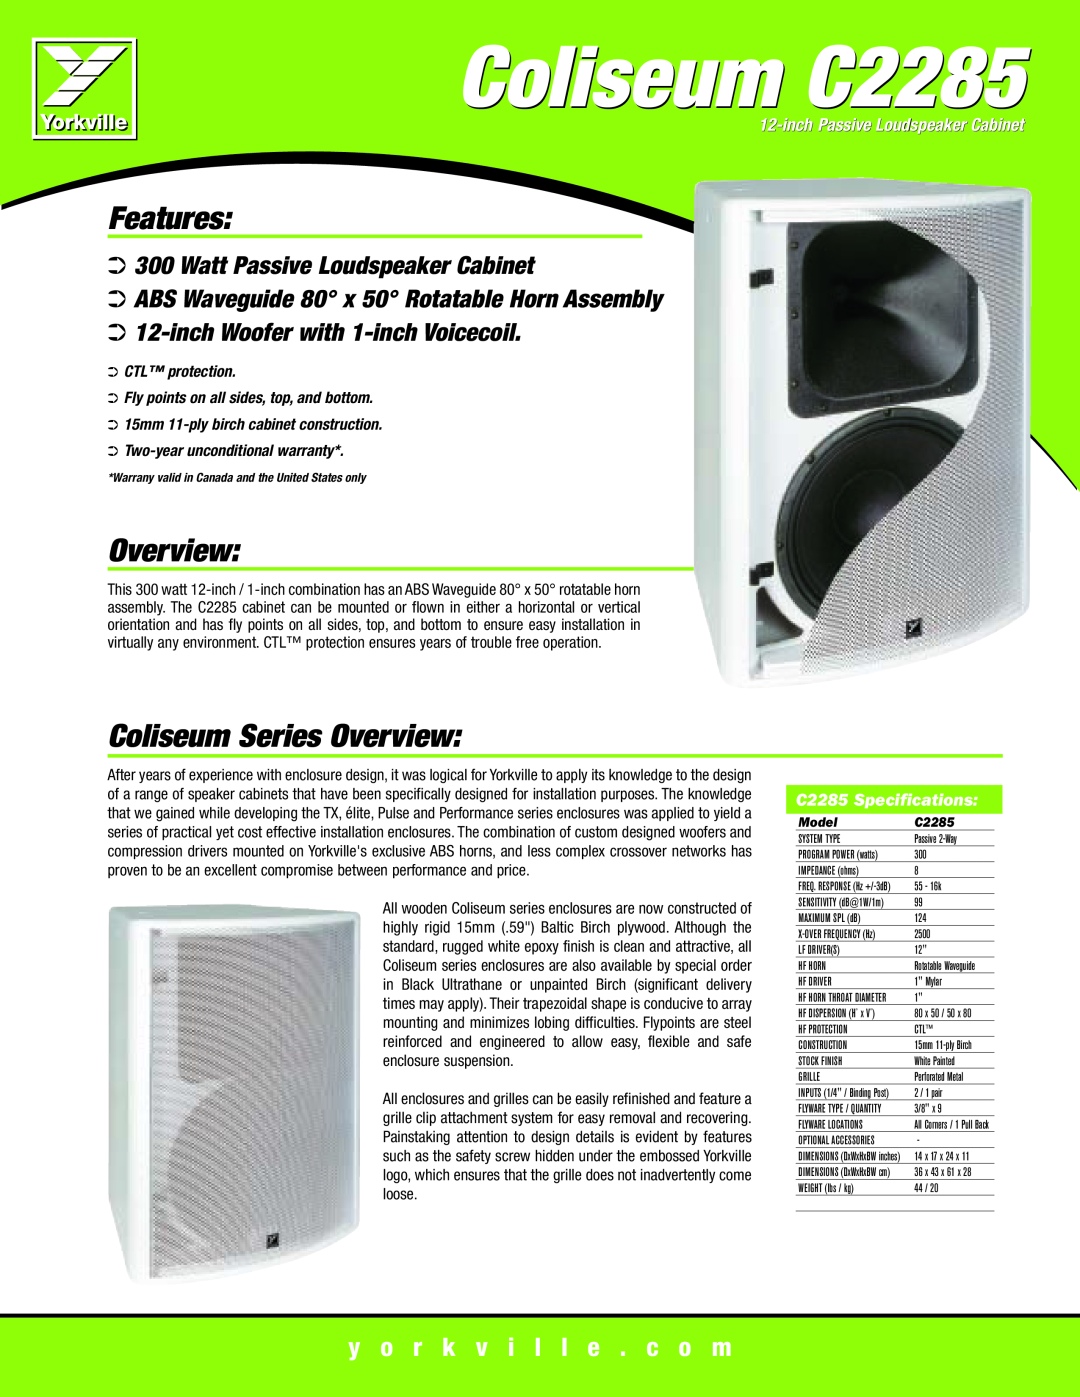 Yorkville Sound specifications Coliseum C2285, Features, Coliseum Series Overview, Watt Passive Loudspeaker Cabinet 